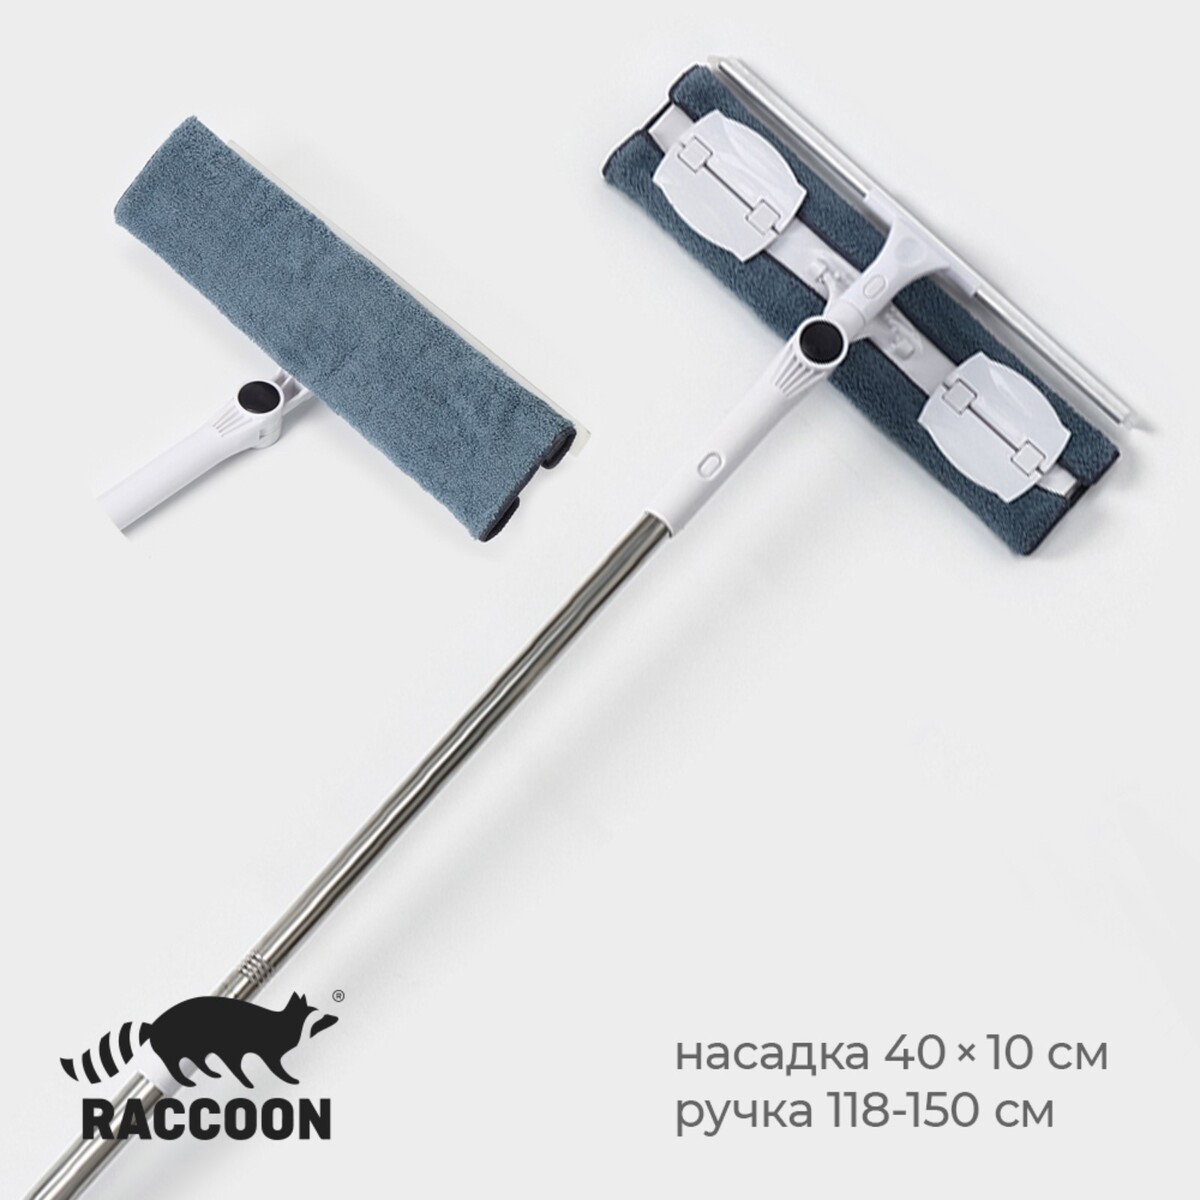 Окномойка бабочка raccoon, стальная телескопическая ручка, микрофибра, поворот на 180°, 40×10×118(150) см швабра губка 120 см с отжимом телескопическая ручка зеленая умничка эконом kwl10207